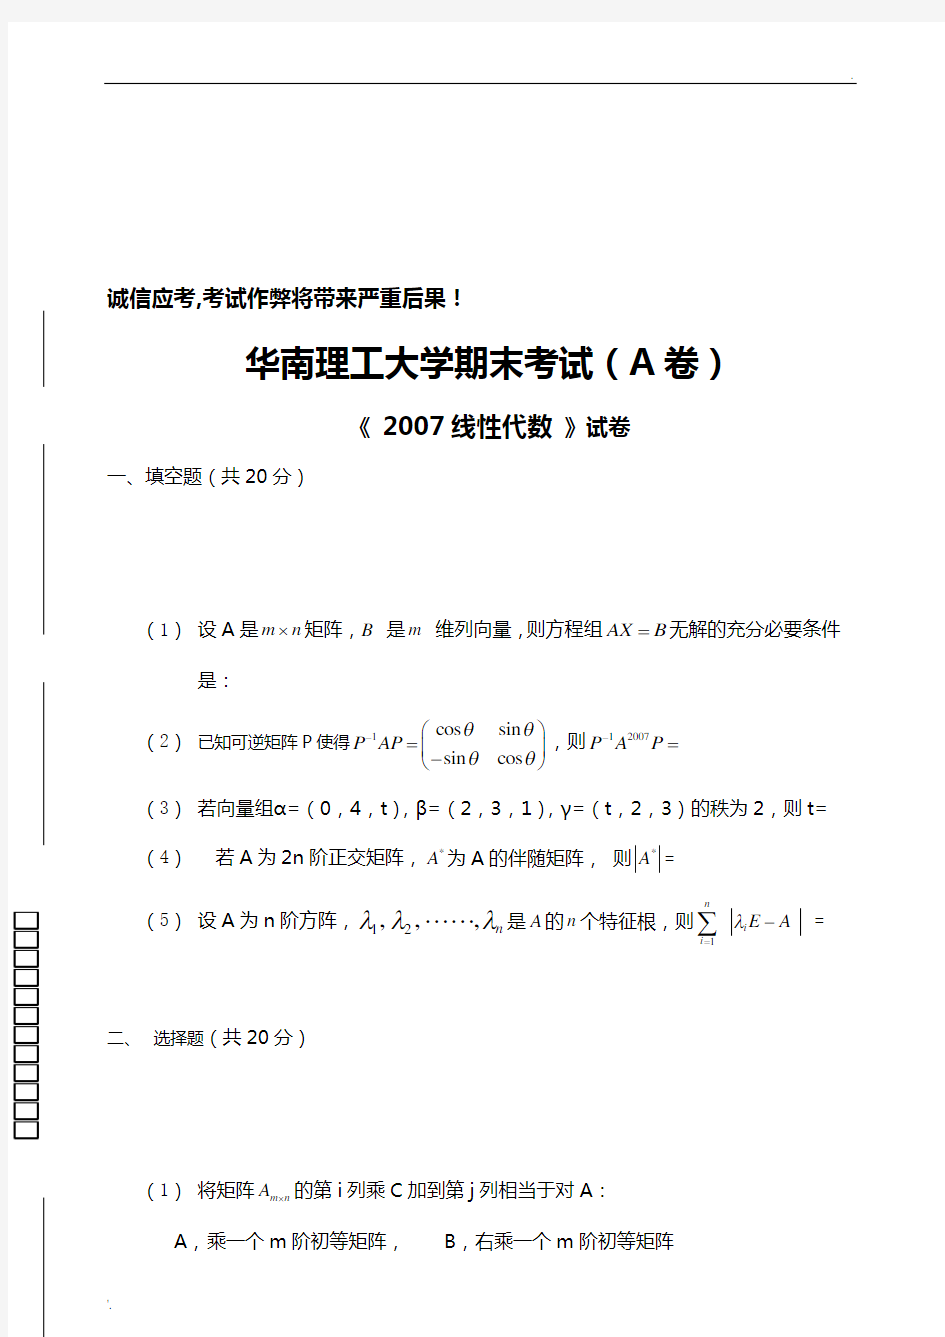 华南理工大学 线性代数与解析几何 试卷